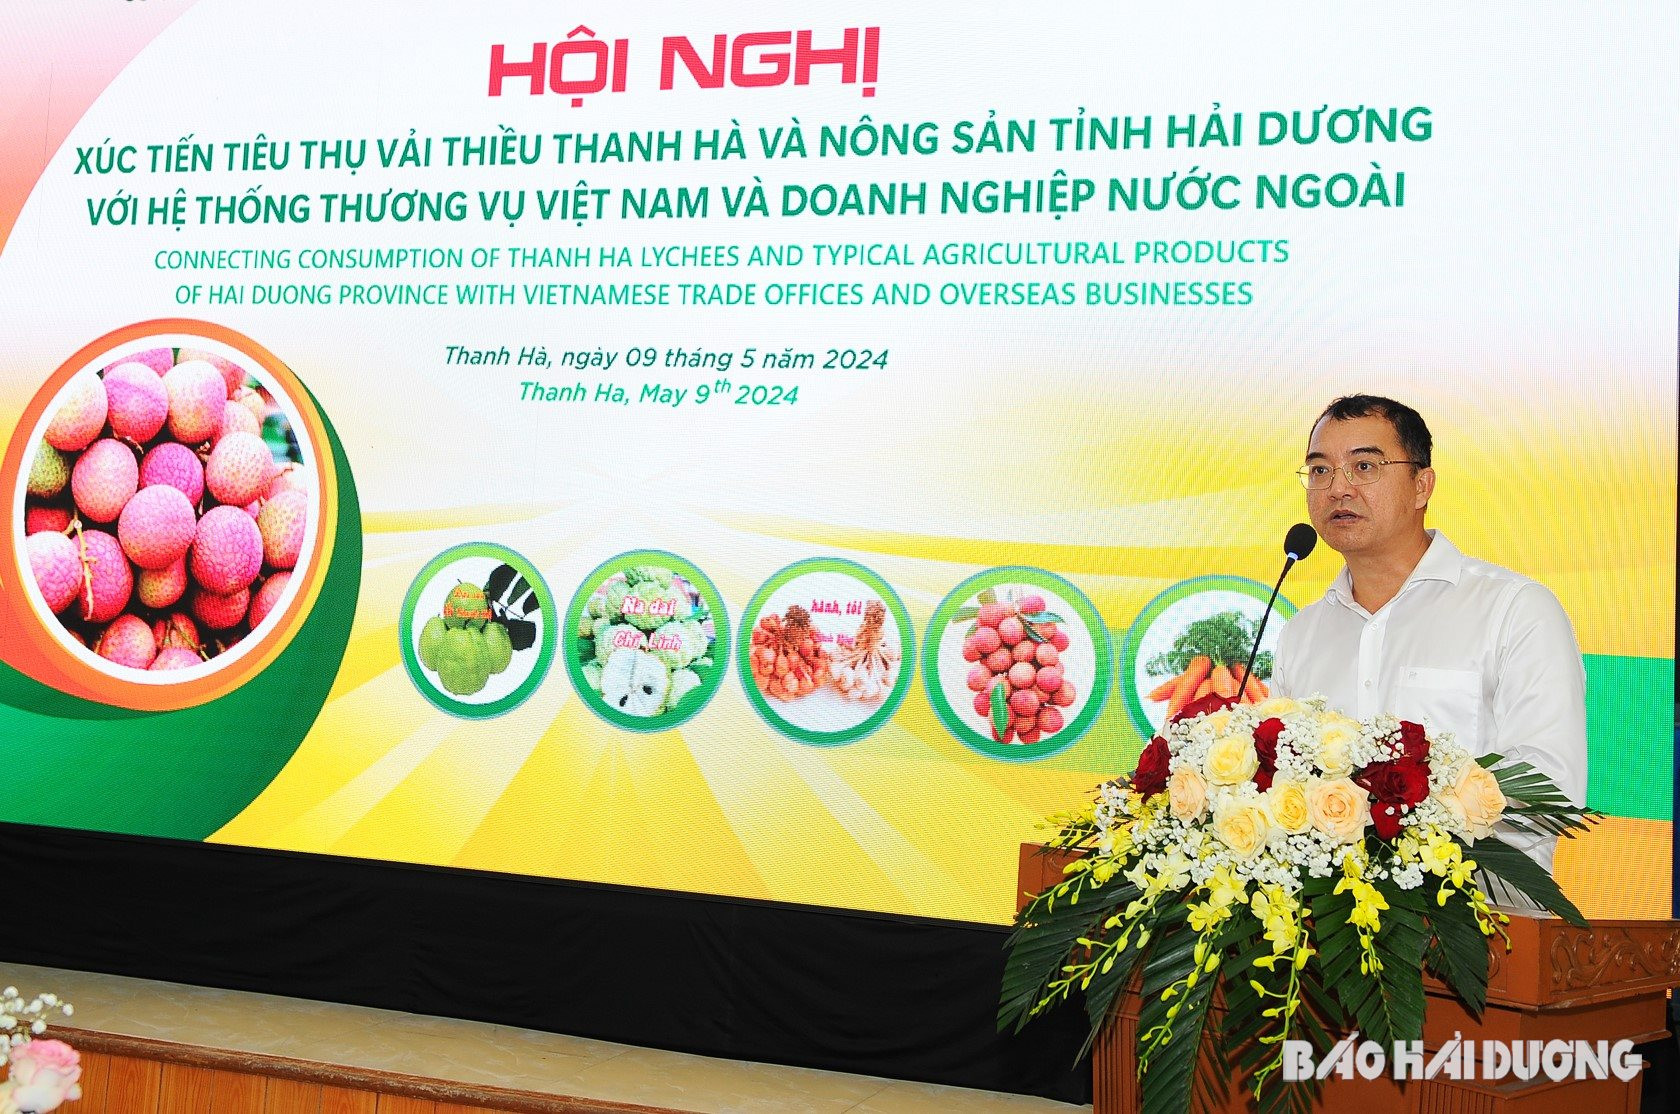 Ông Mai Xuân Thìn, Giám đốc Công ty TNHH Sản xuất dịch vụ thương mại Rồng Đỏ mong muốn tiếp tục nhận được nhiều hỗ trợ kết nối để mở rộng thêm nhiều thị trường xuất khẩu mới